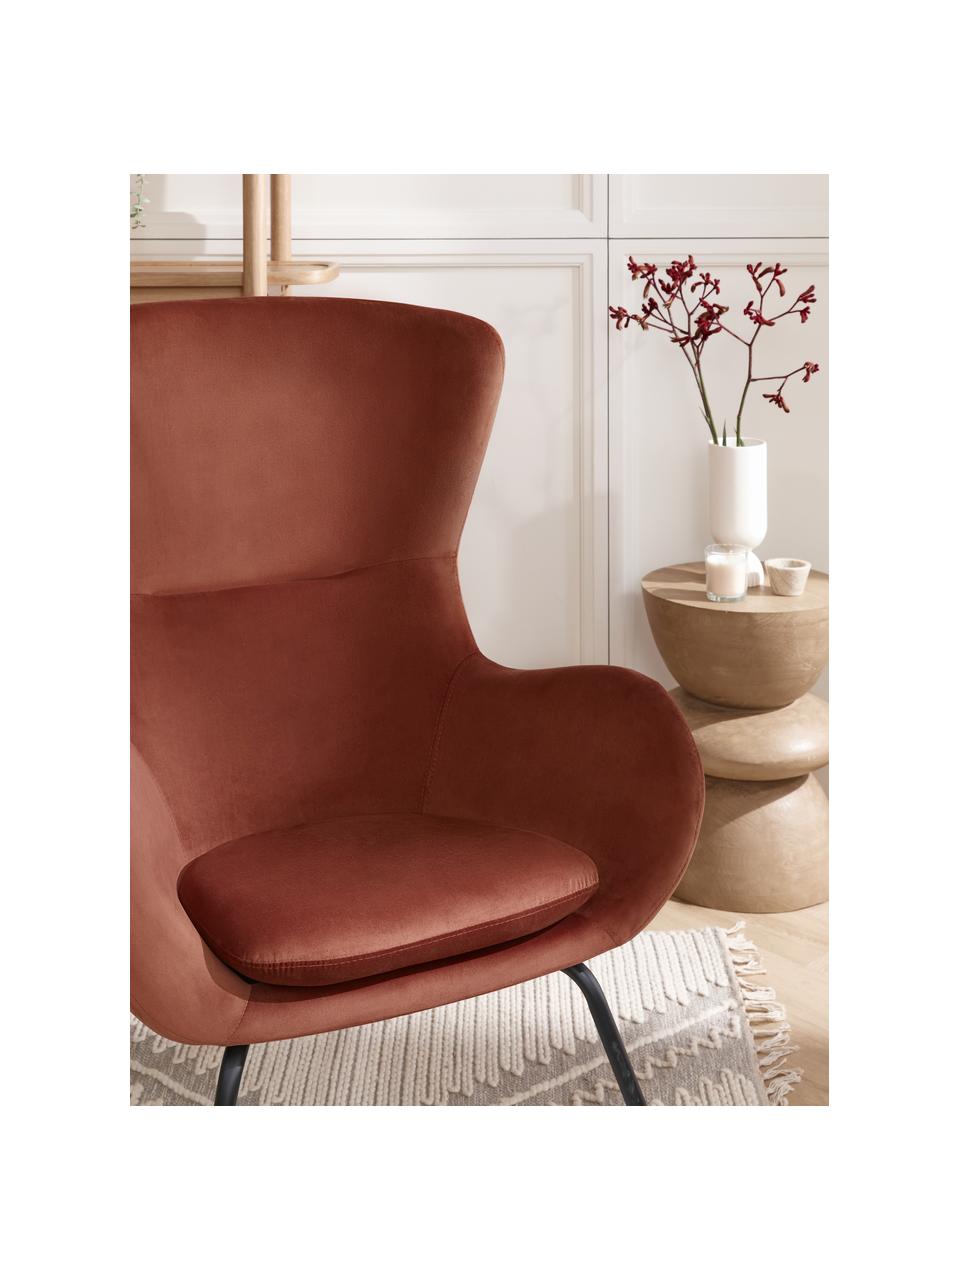 Fluwelen fauteuil Wing in bruin met metalen poten, Frame: metaal, verzinkt, Fluweel bruin, B 75 x H 85 cm